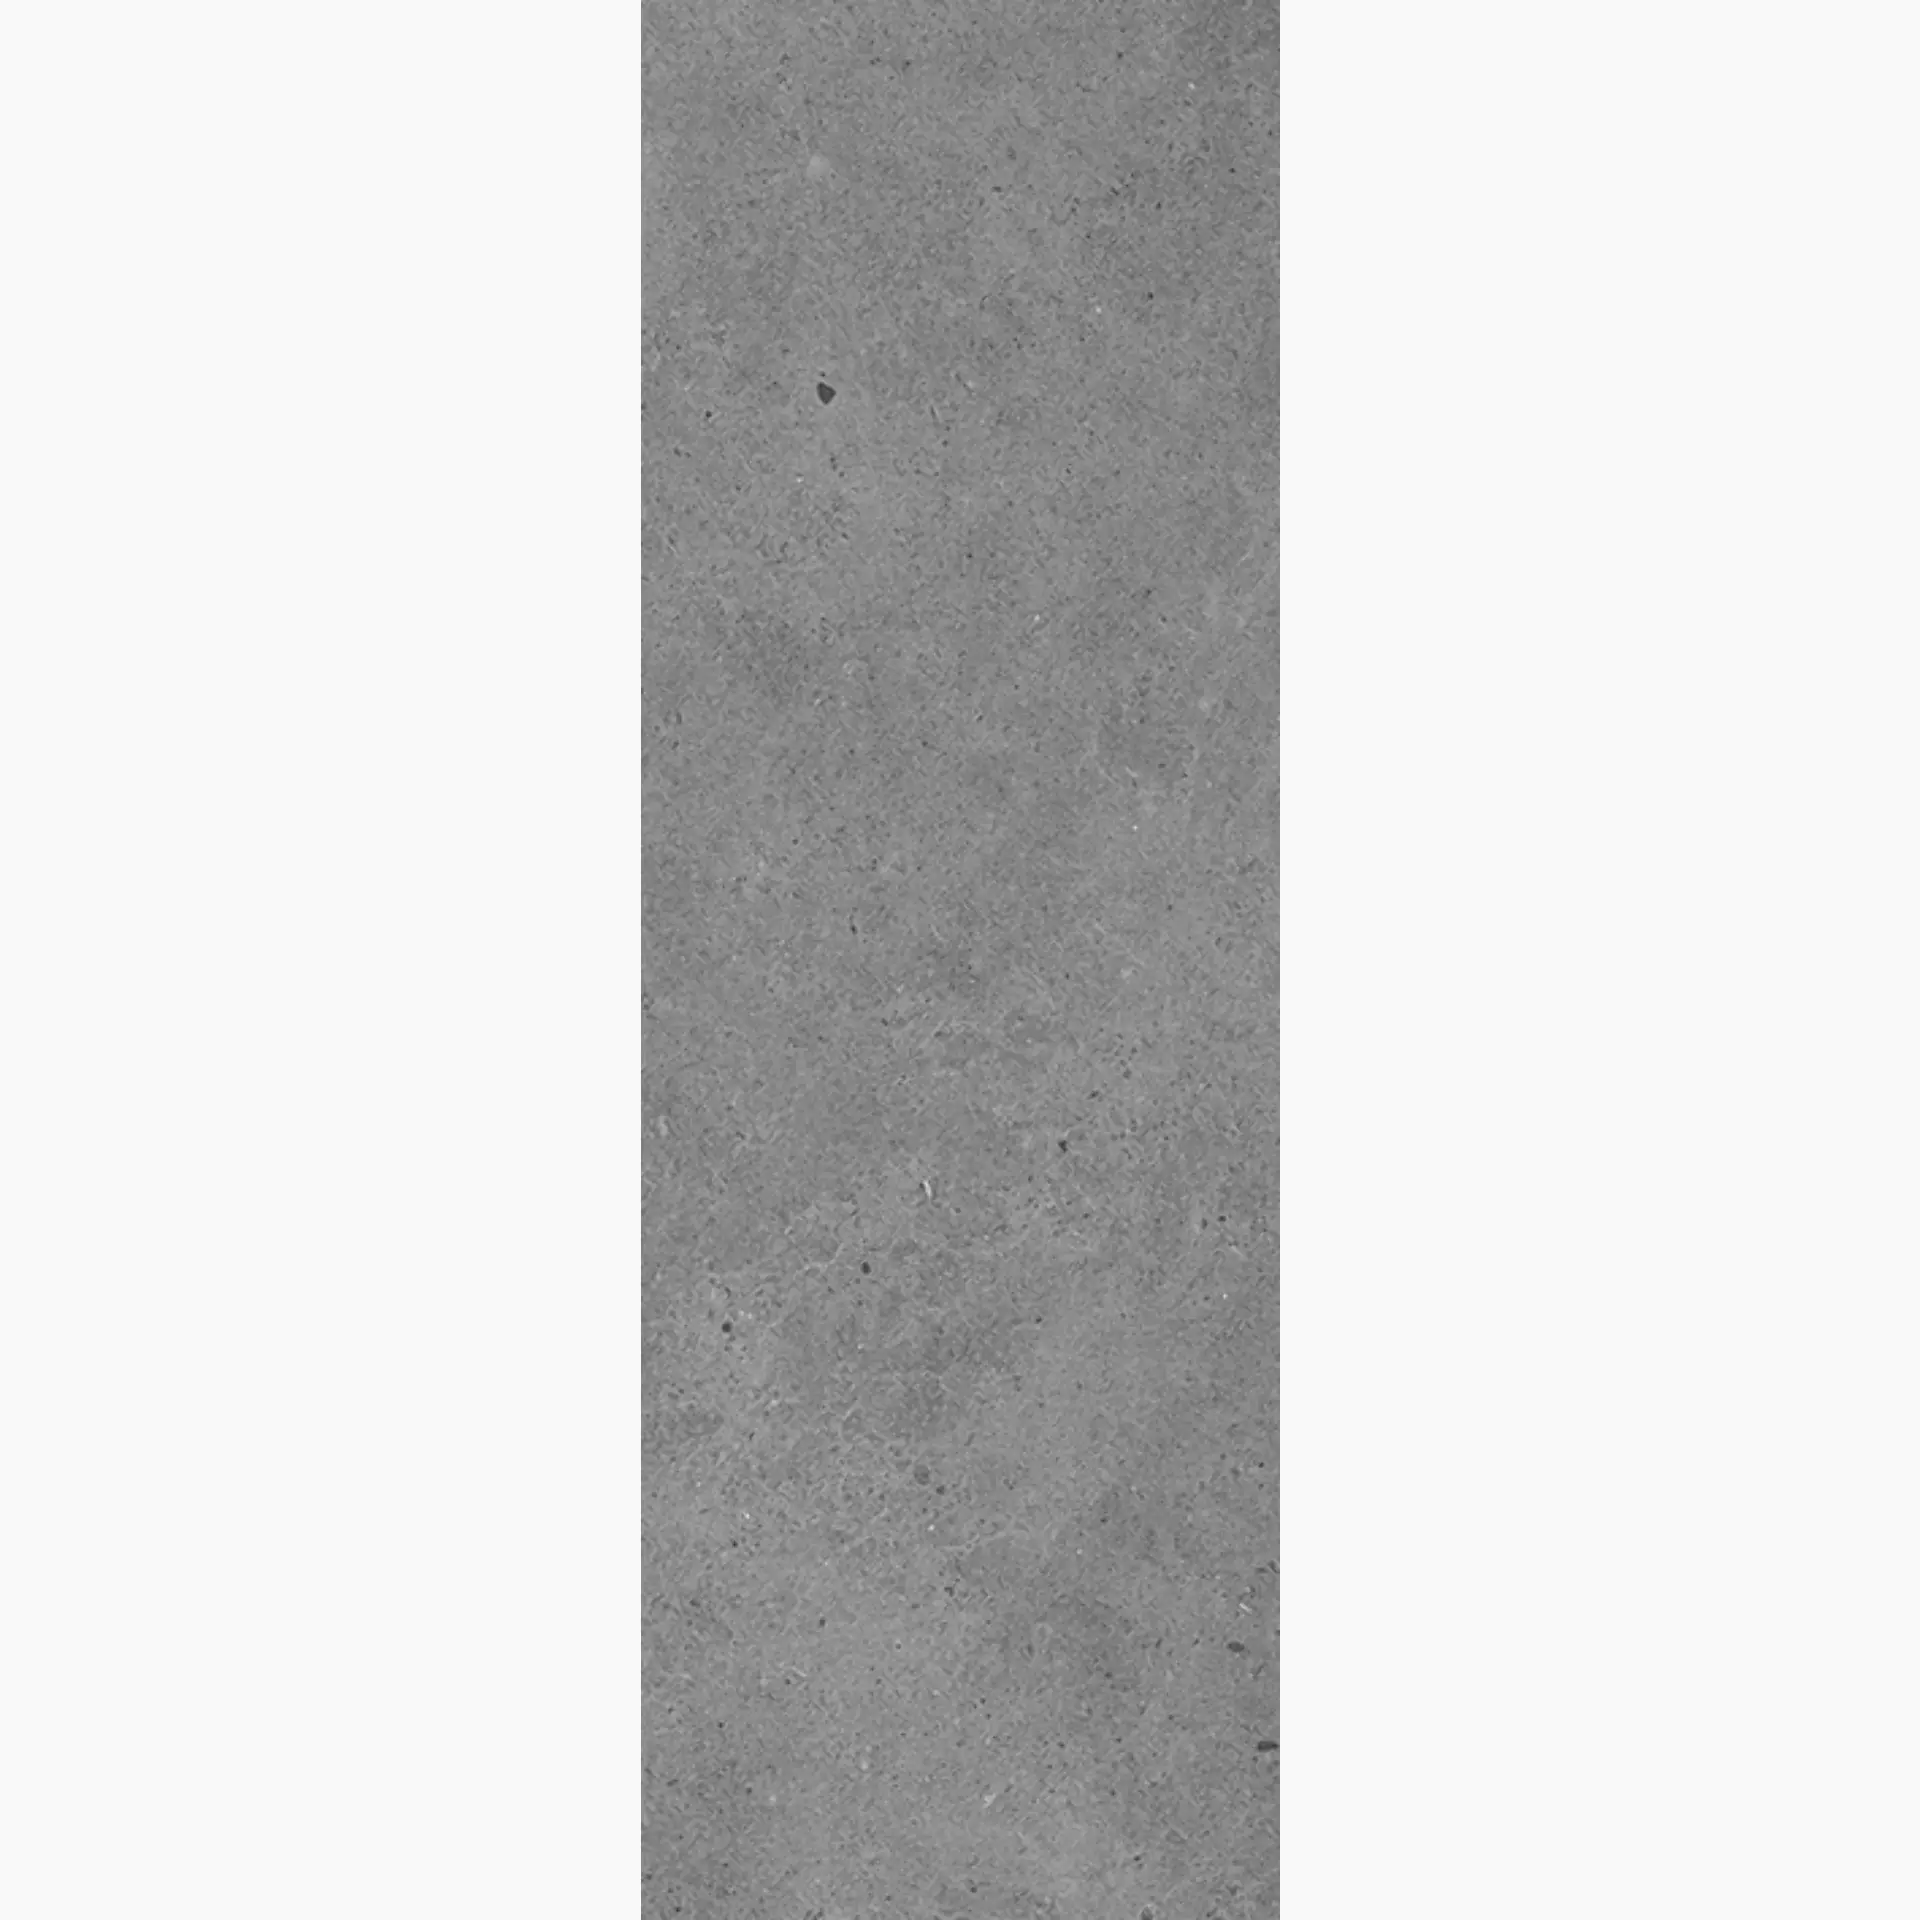 Wandfliese,Bodenfliese Villeroy & Boch Solid Tones Pure Concrete Matt Pure Concrete 2621-PC61 matt 20x60cm rektifiziert 10mm